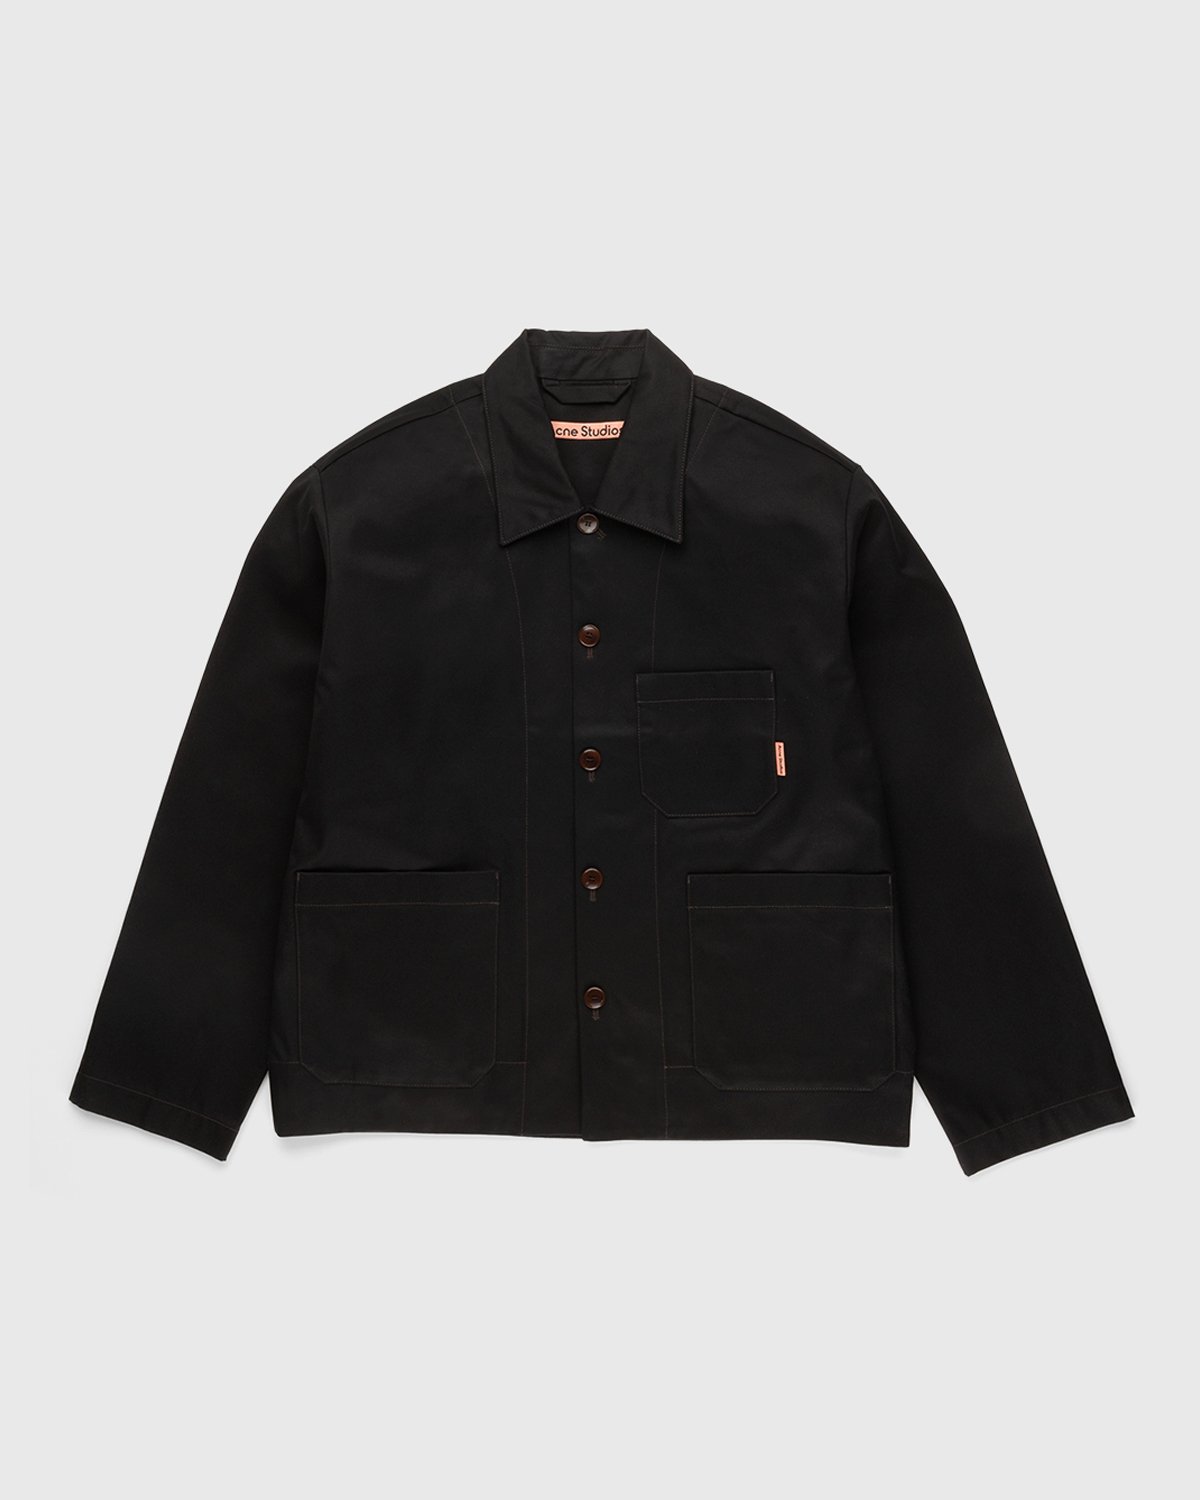 Acne Studios - Cotton Twill Jacket Black - Clothing - Black - Image 1